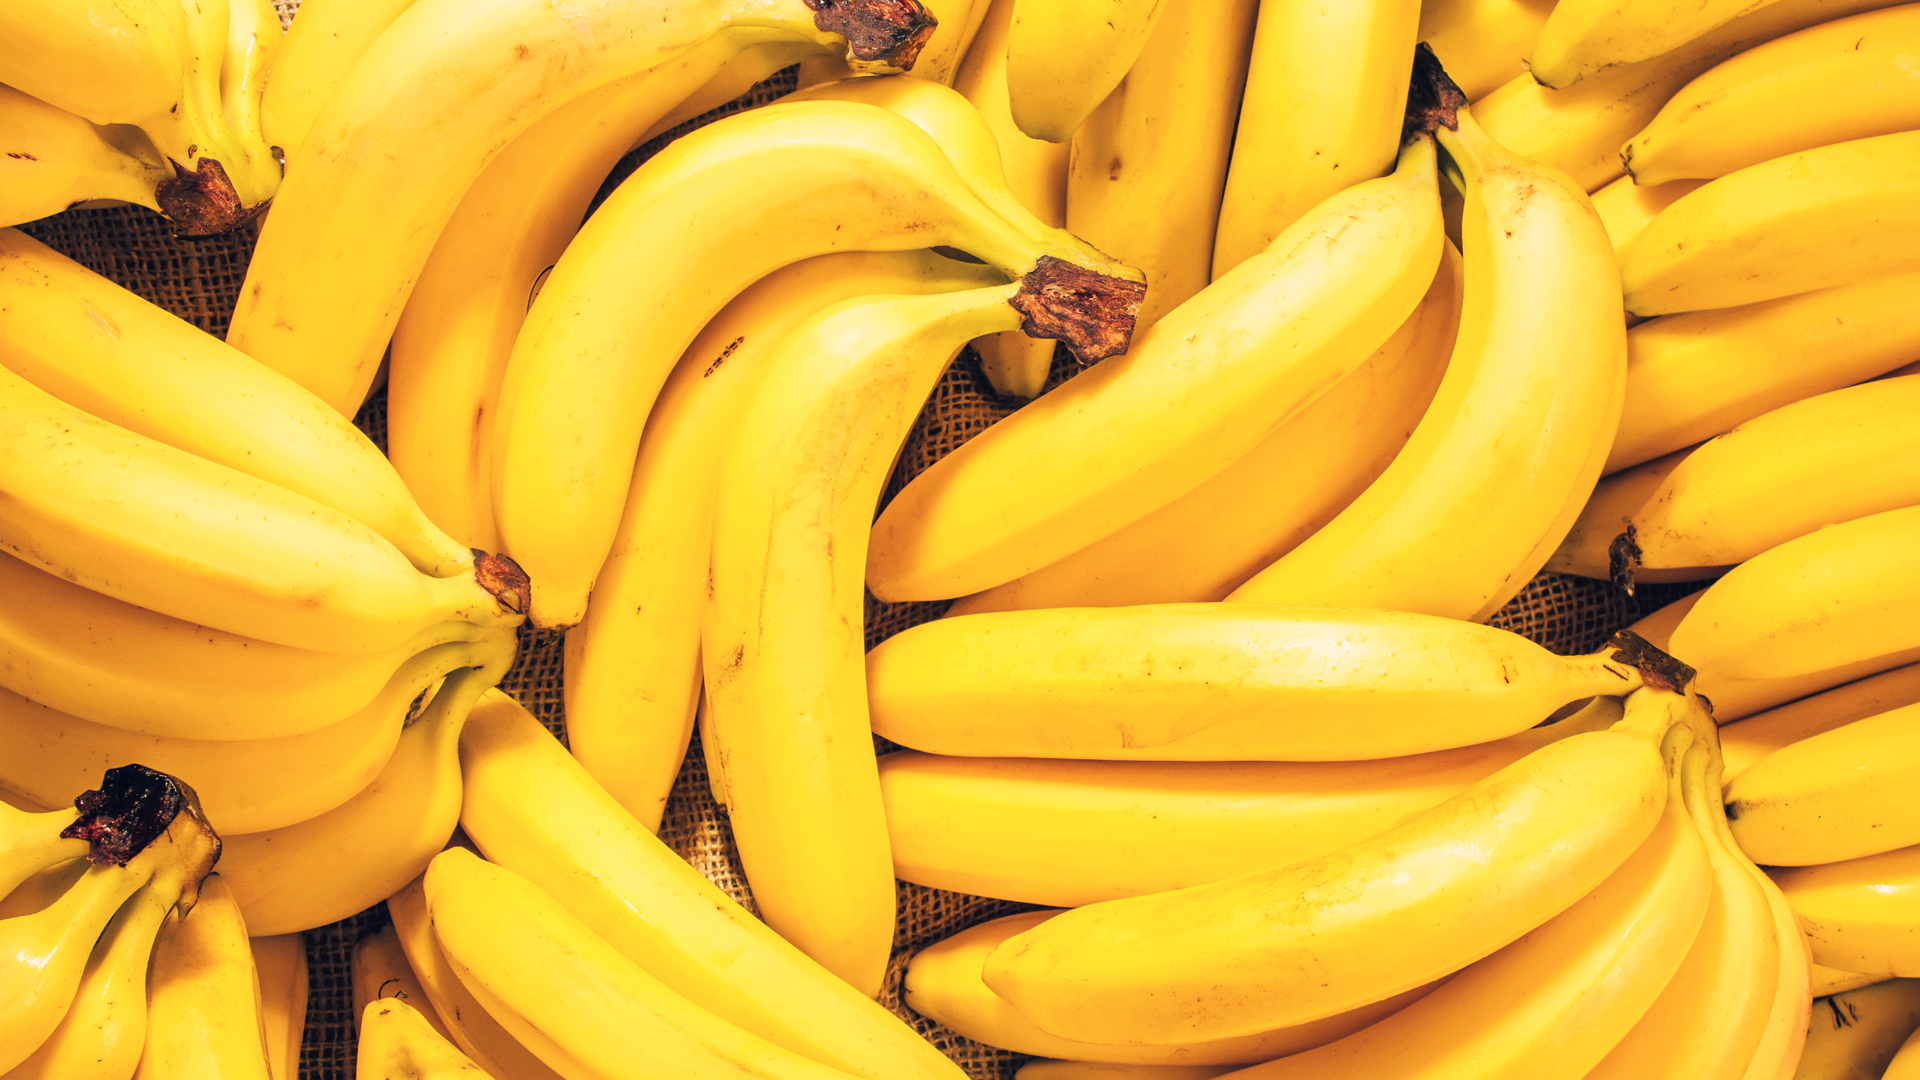 La banana puede actuar como un sedante natural y ayuda a la relajación para dormir